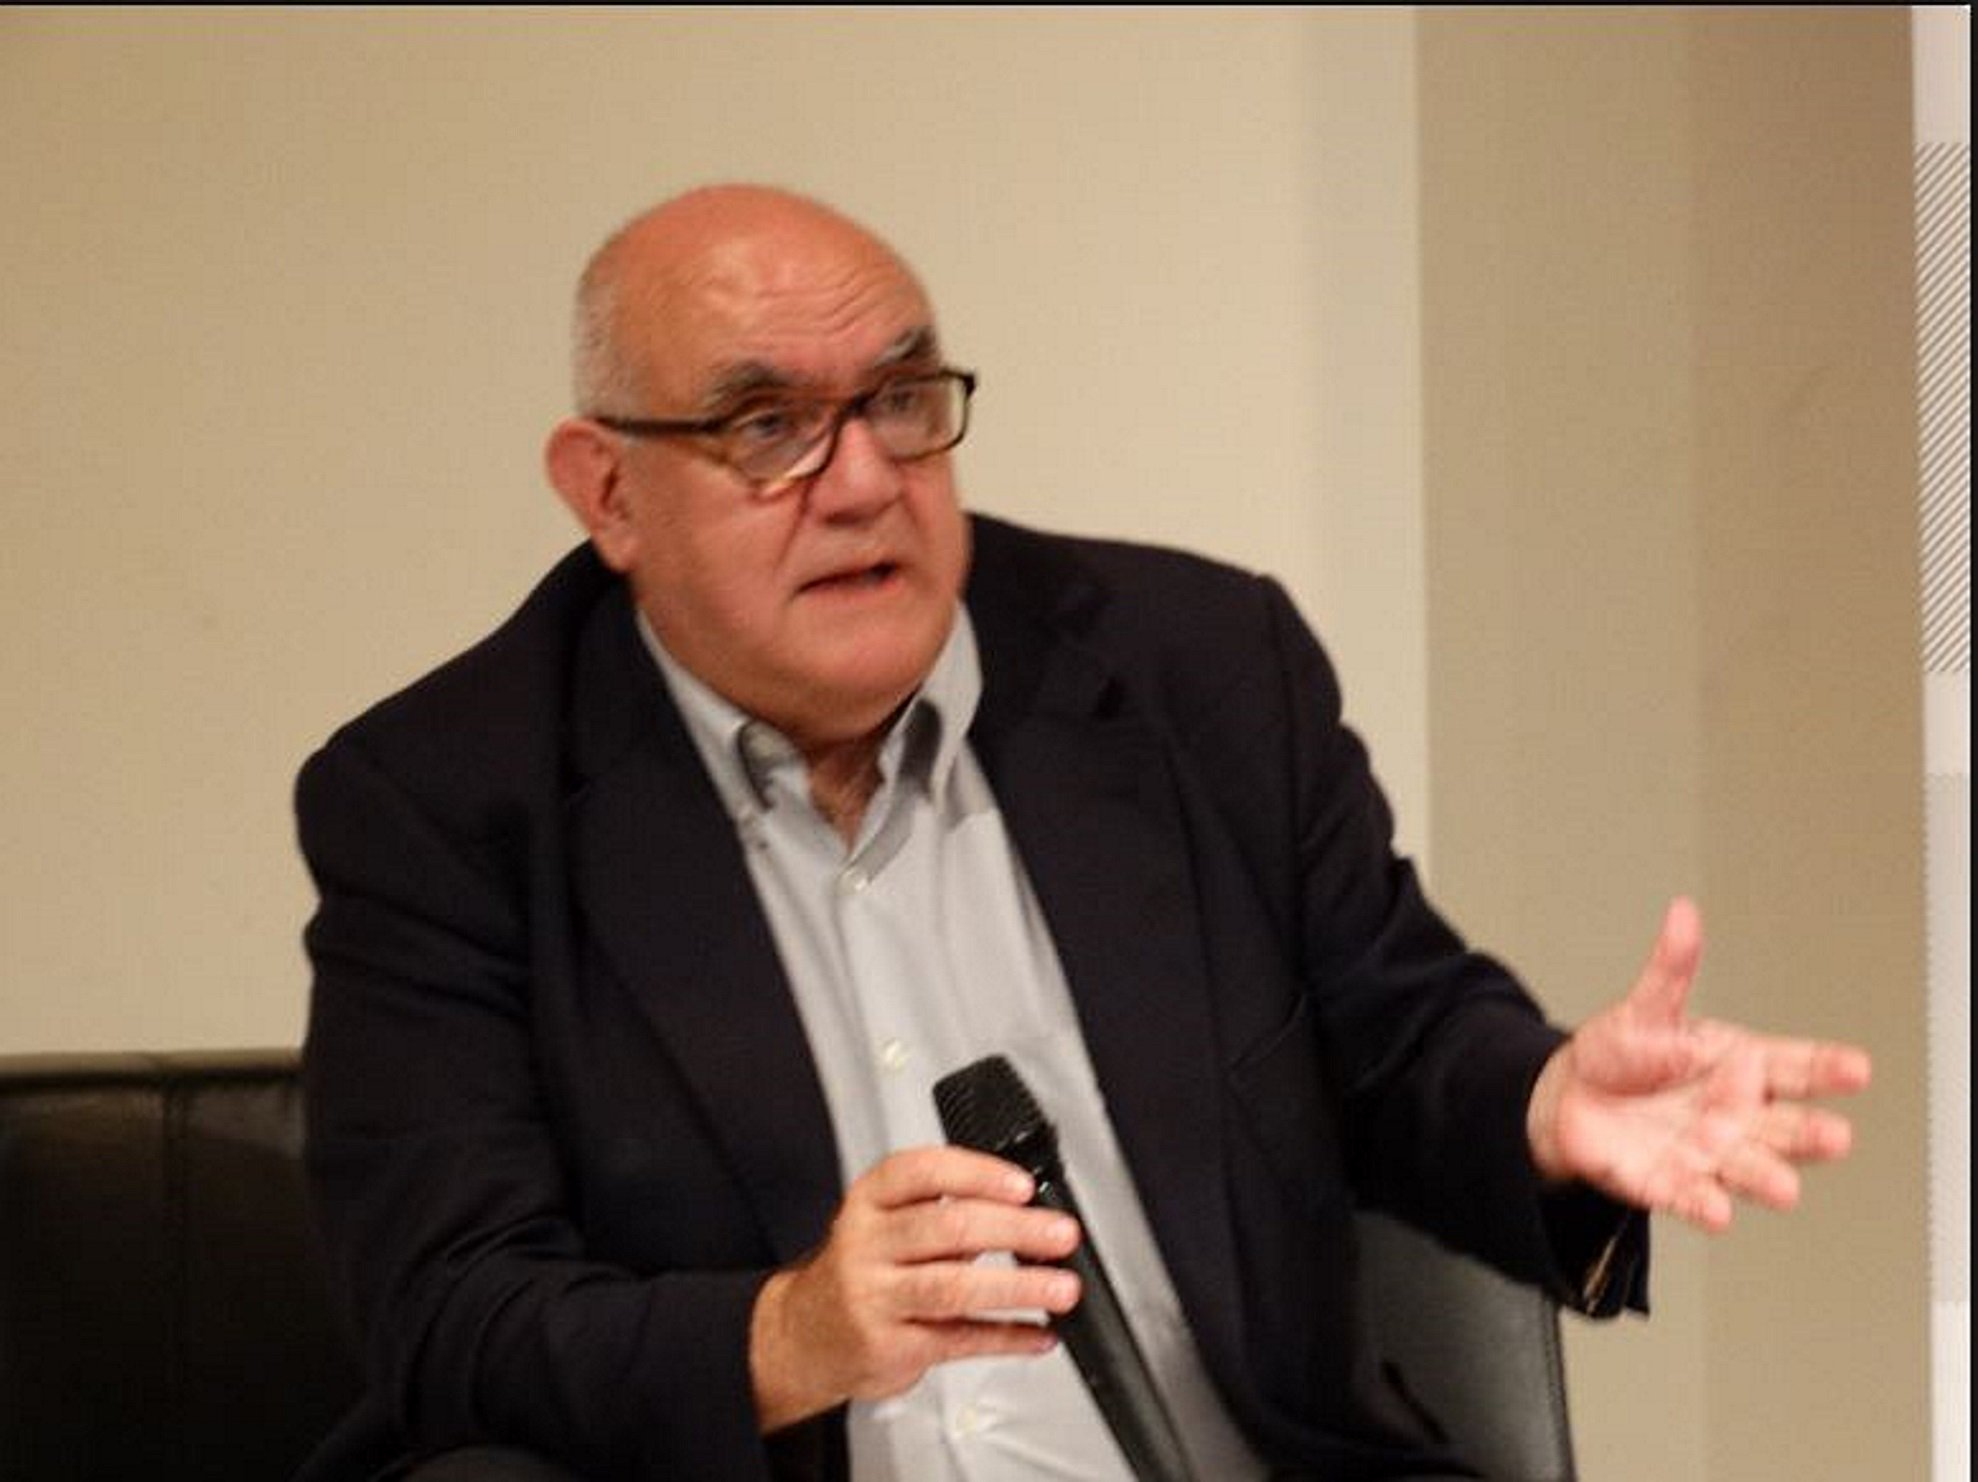 L'històric comunista Manuel Delgado anuncia que votarà Puigdemont (i també Maragall)